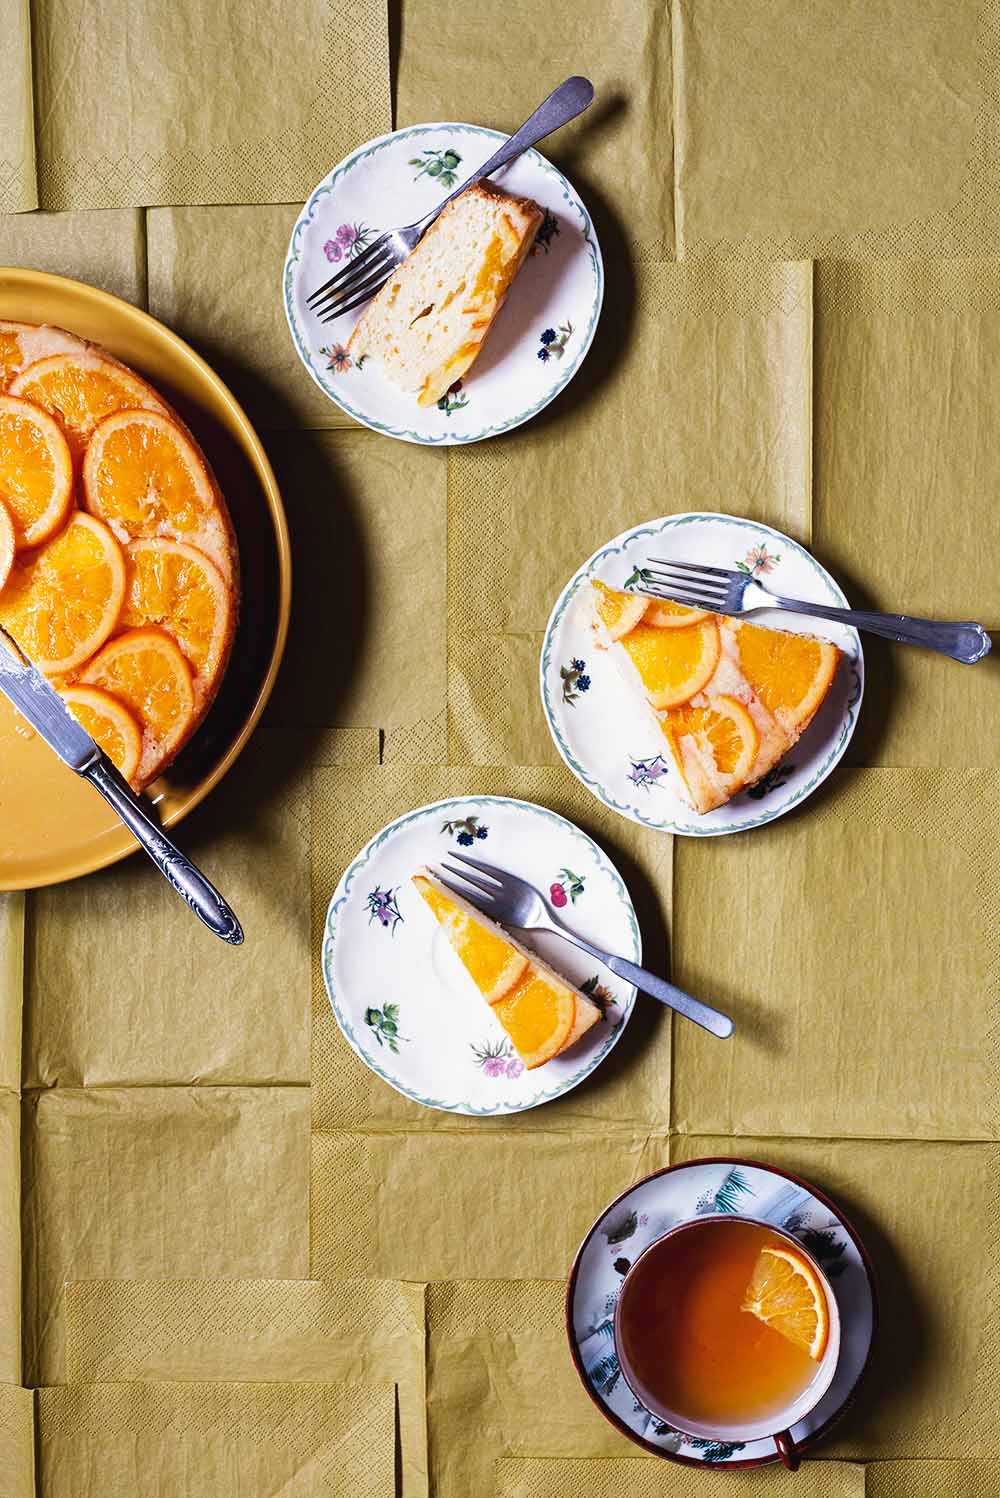 En un mantel de color caqui está la tarta de naranja invertida ya cortada. En dos platos pequeños hay dos raciones de tarta. En cada plato hay un tenedor. En el mantel también se ve una taza de té.